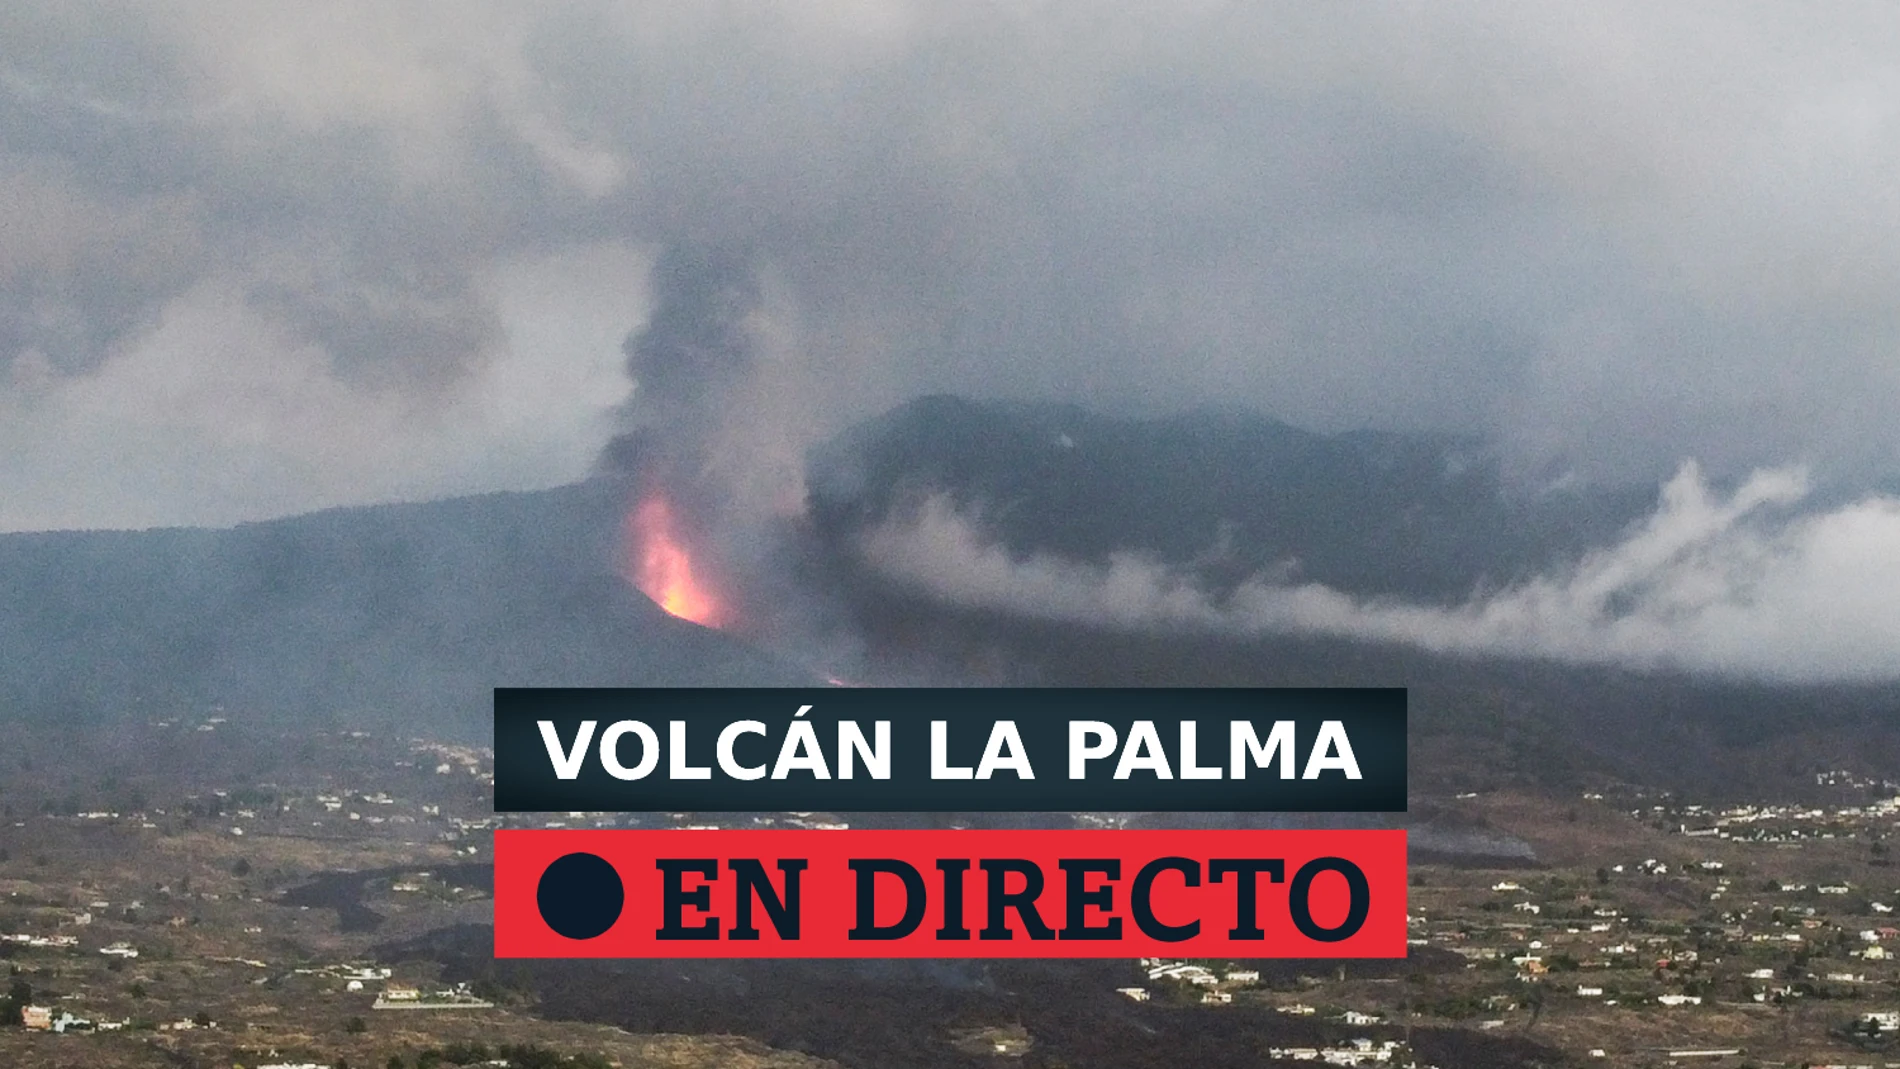 La última hora del volcán de La Palma, en directo en laSexta.com